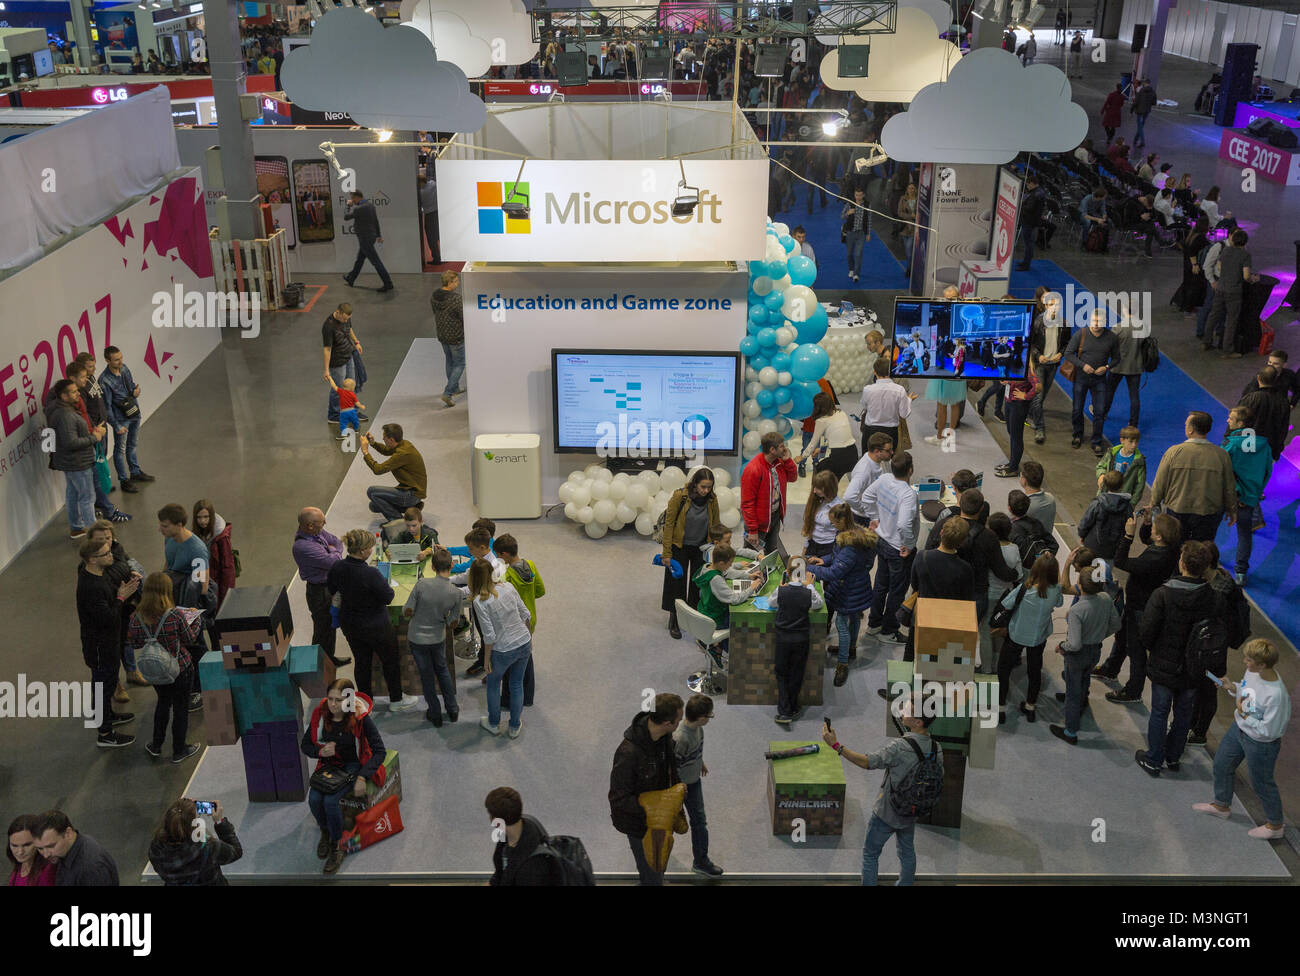 KIEV, UCRAINA - 07 ottobre 2017: la gente visita Microsoft Education e zona giochi presso la CEE 2017, il più grande consumer electronics trade show di Ucraina i Foto Stock